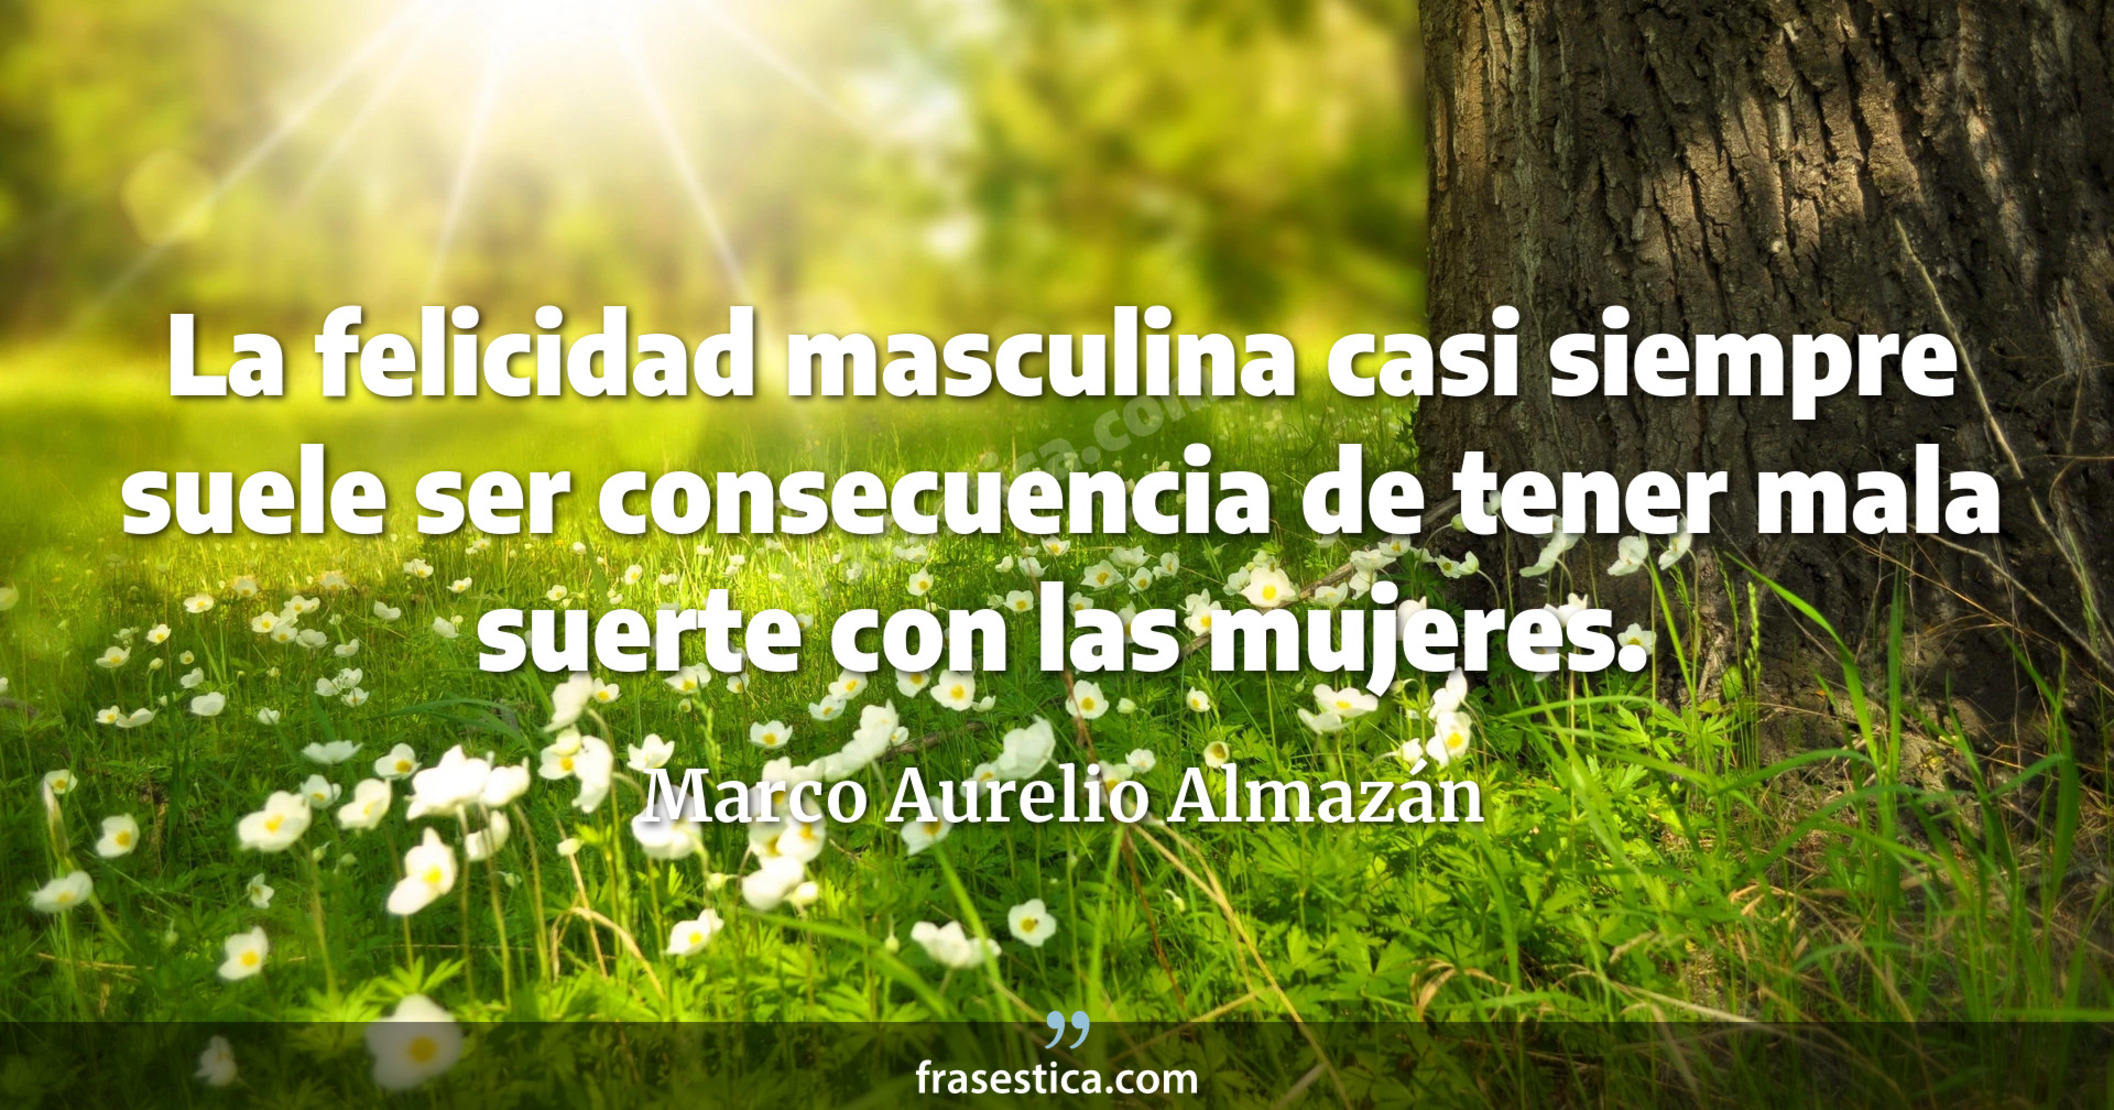 La felicidad masculina casi siempre suele ser consecuencia de tener mala suerte con las mujeres. - Marco Aurelio Almazán